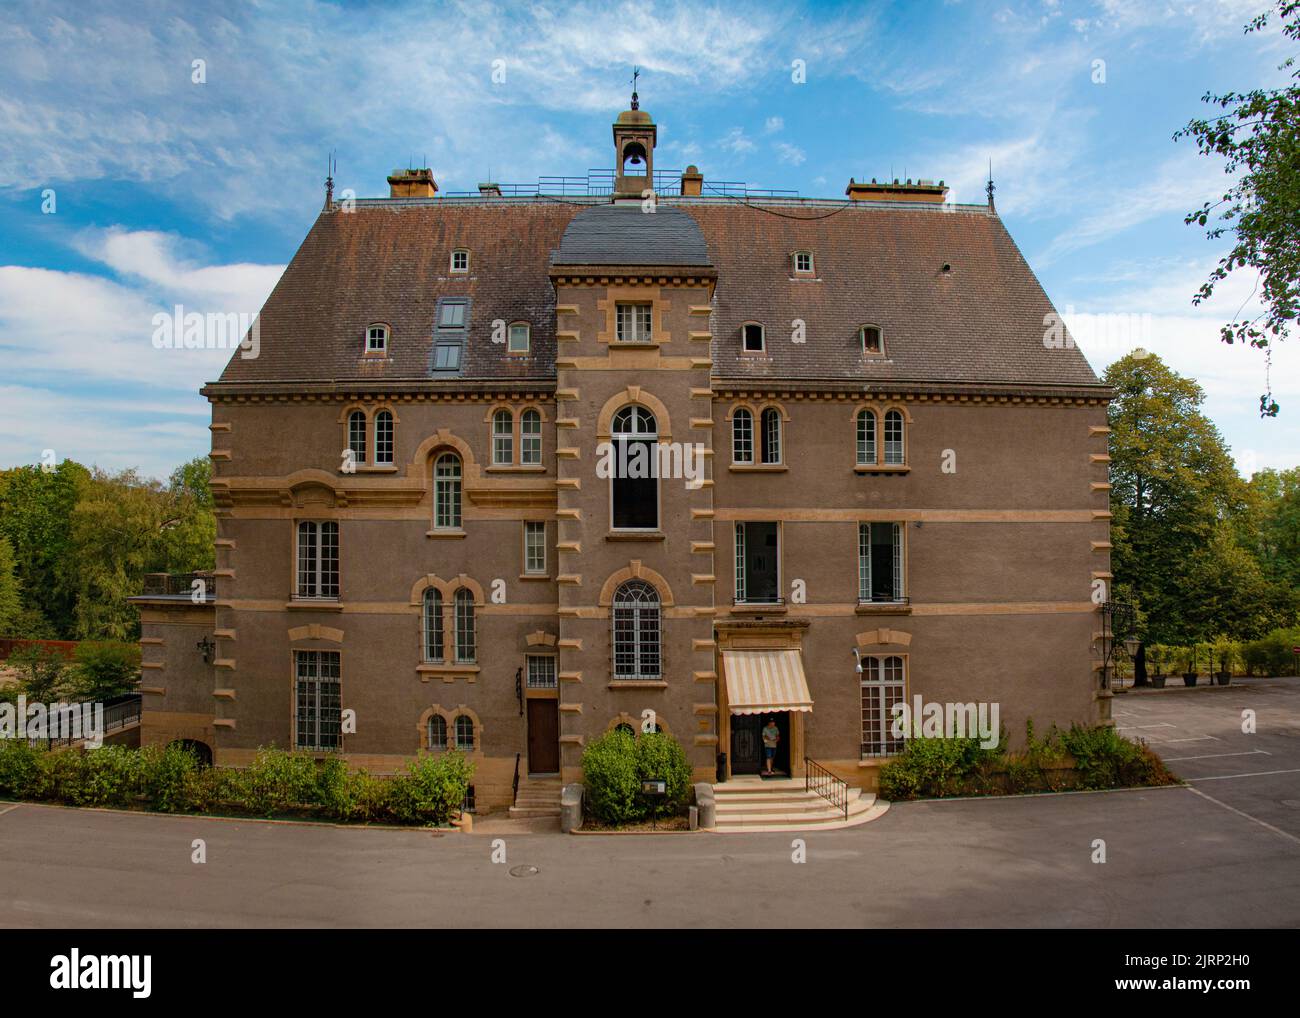 Le magnifique et imposant Ö Chateau Hotel and Restaurant, Hayange, France Banque D'Images